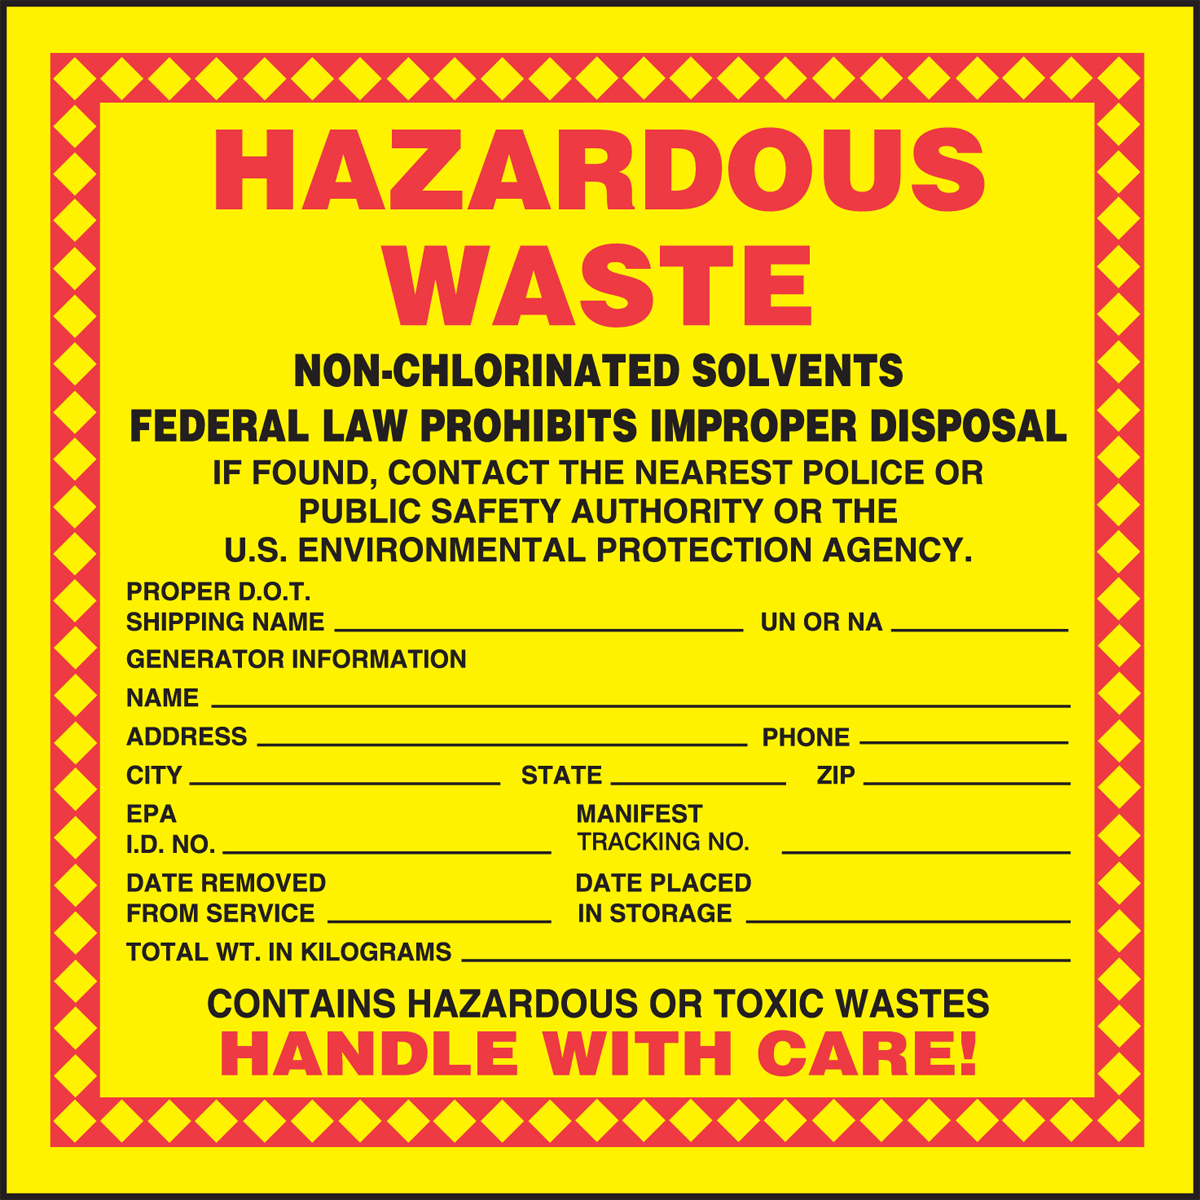 hazardous-waste-label-hazardous-waste-non-chlorinated-solvents-mhzw05psp